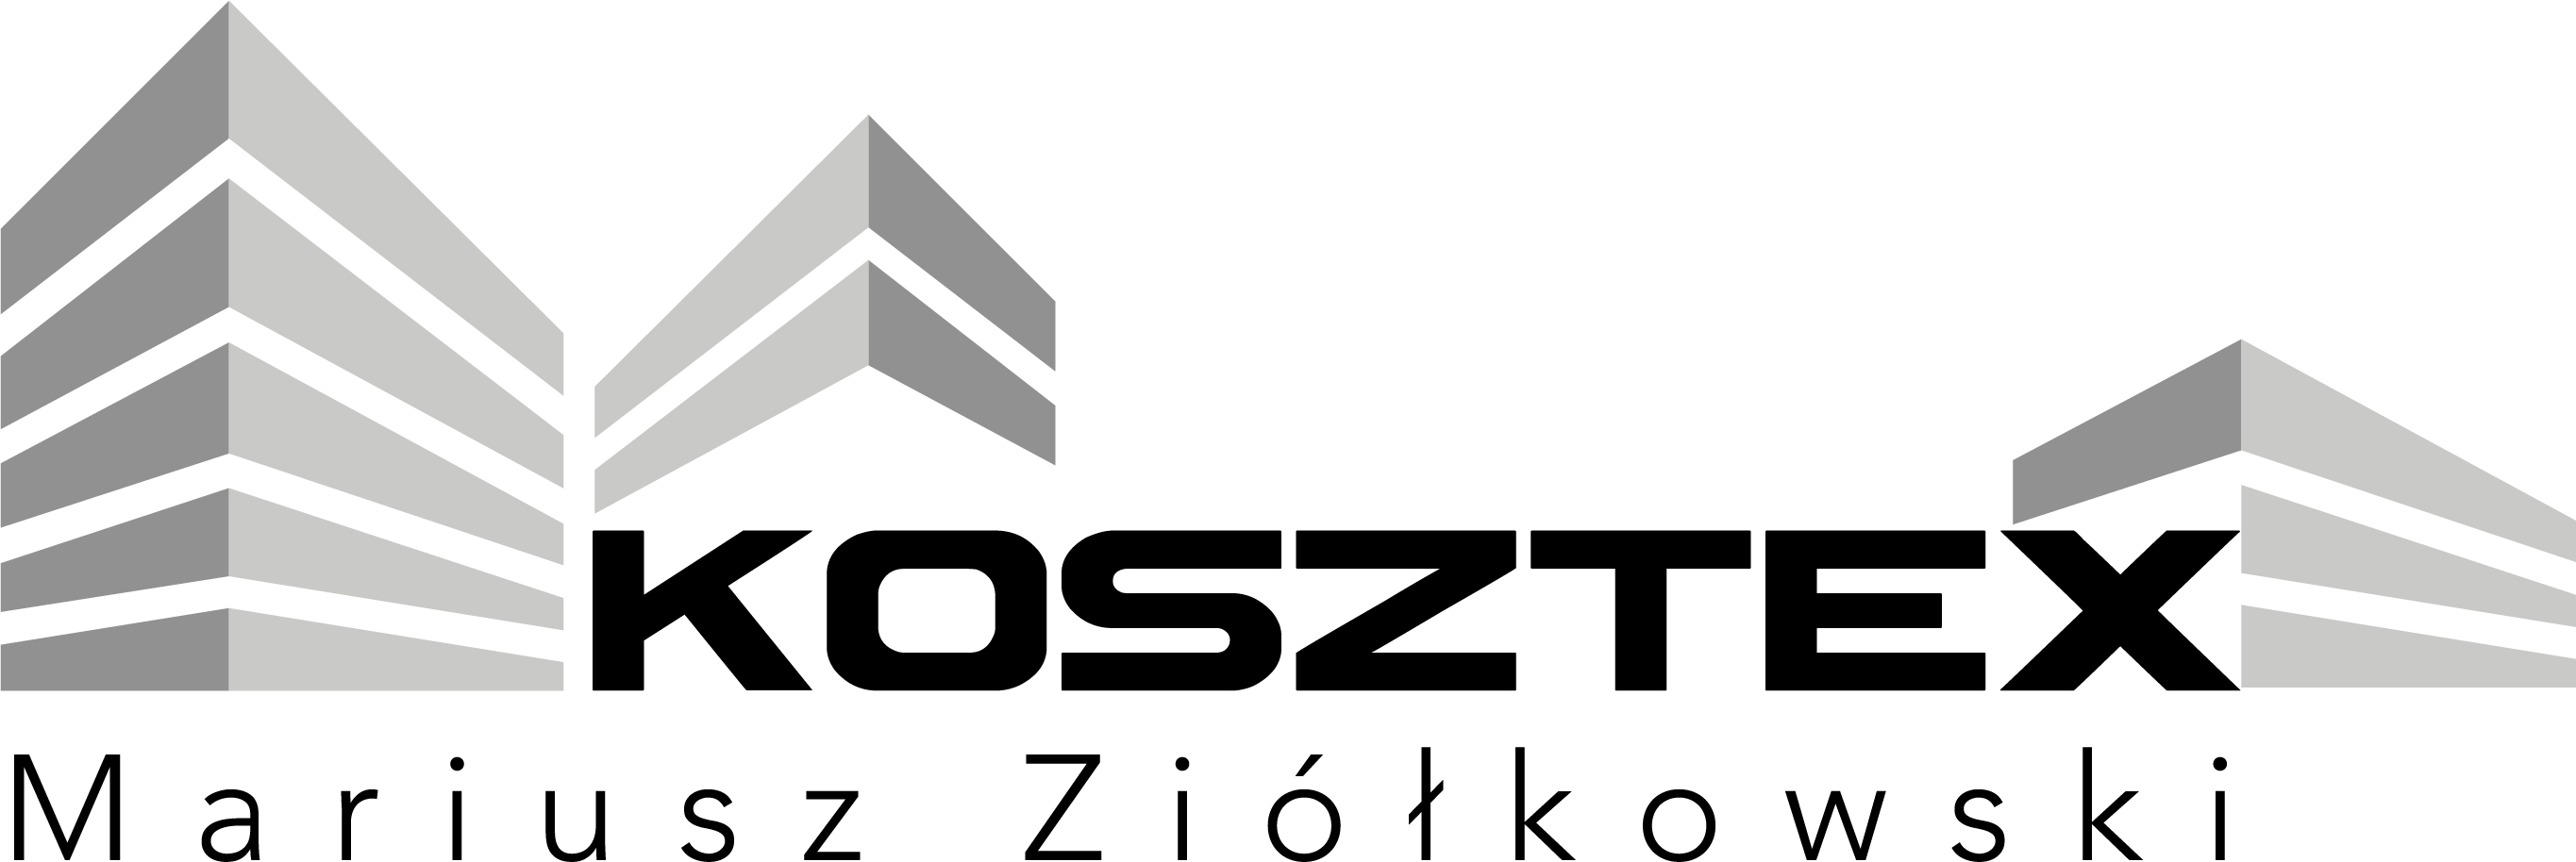 Kosztex.pl